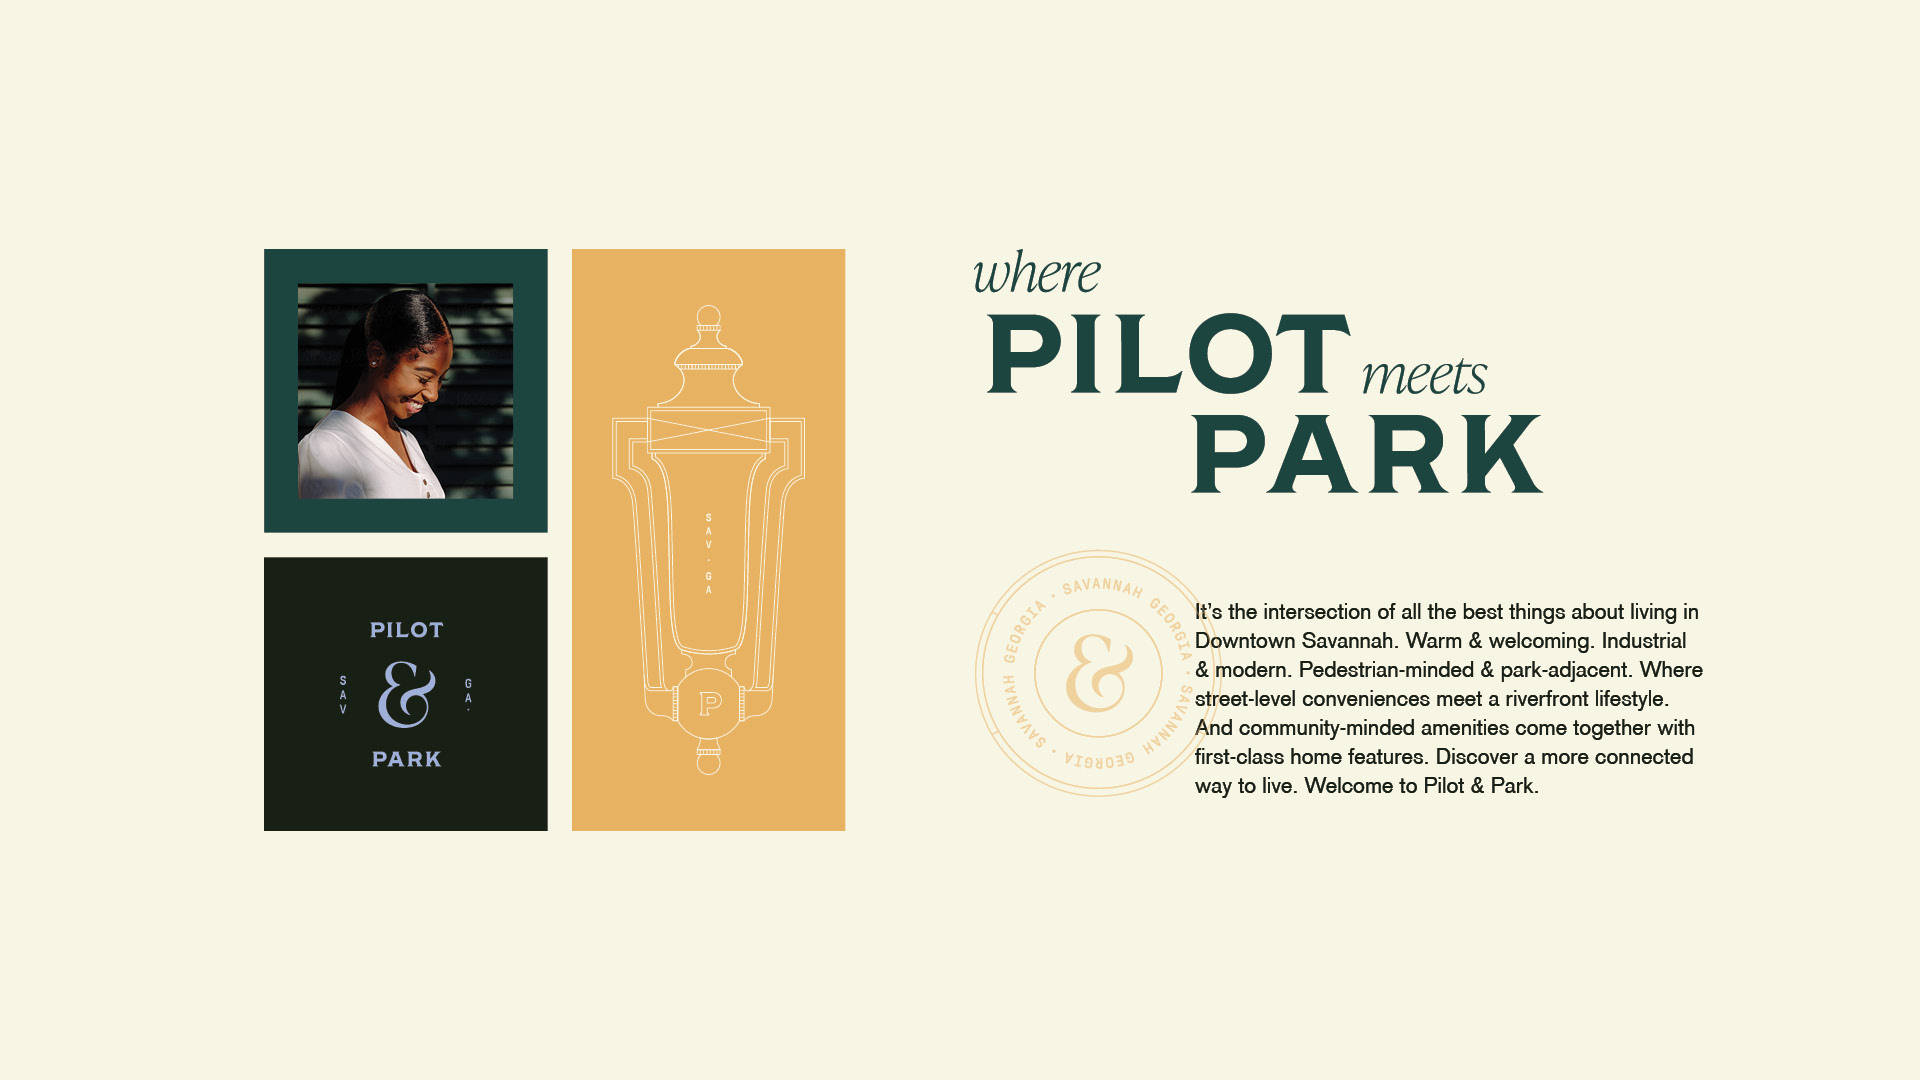 Pilot&Park_positioning